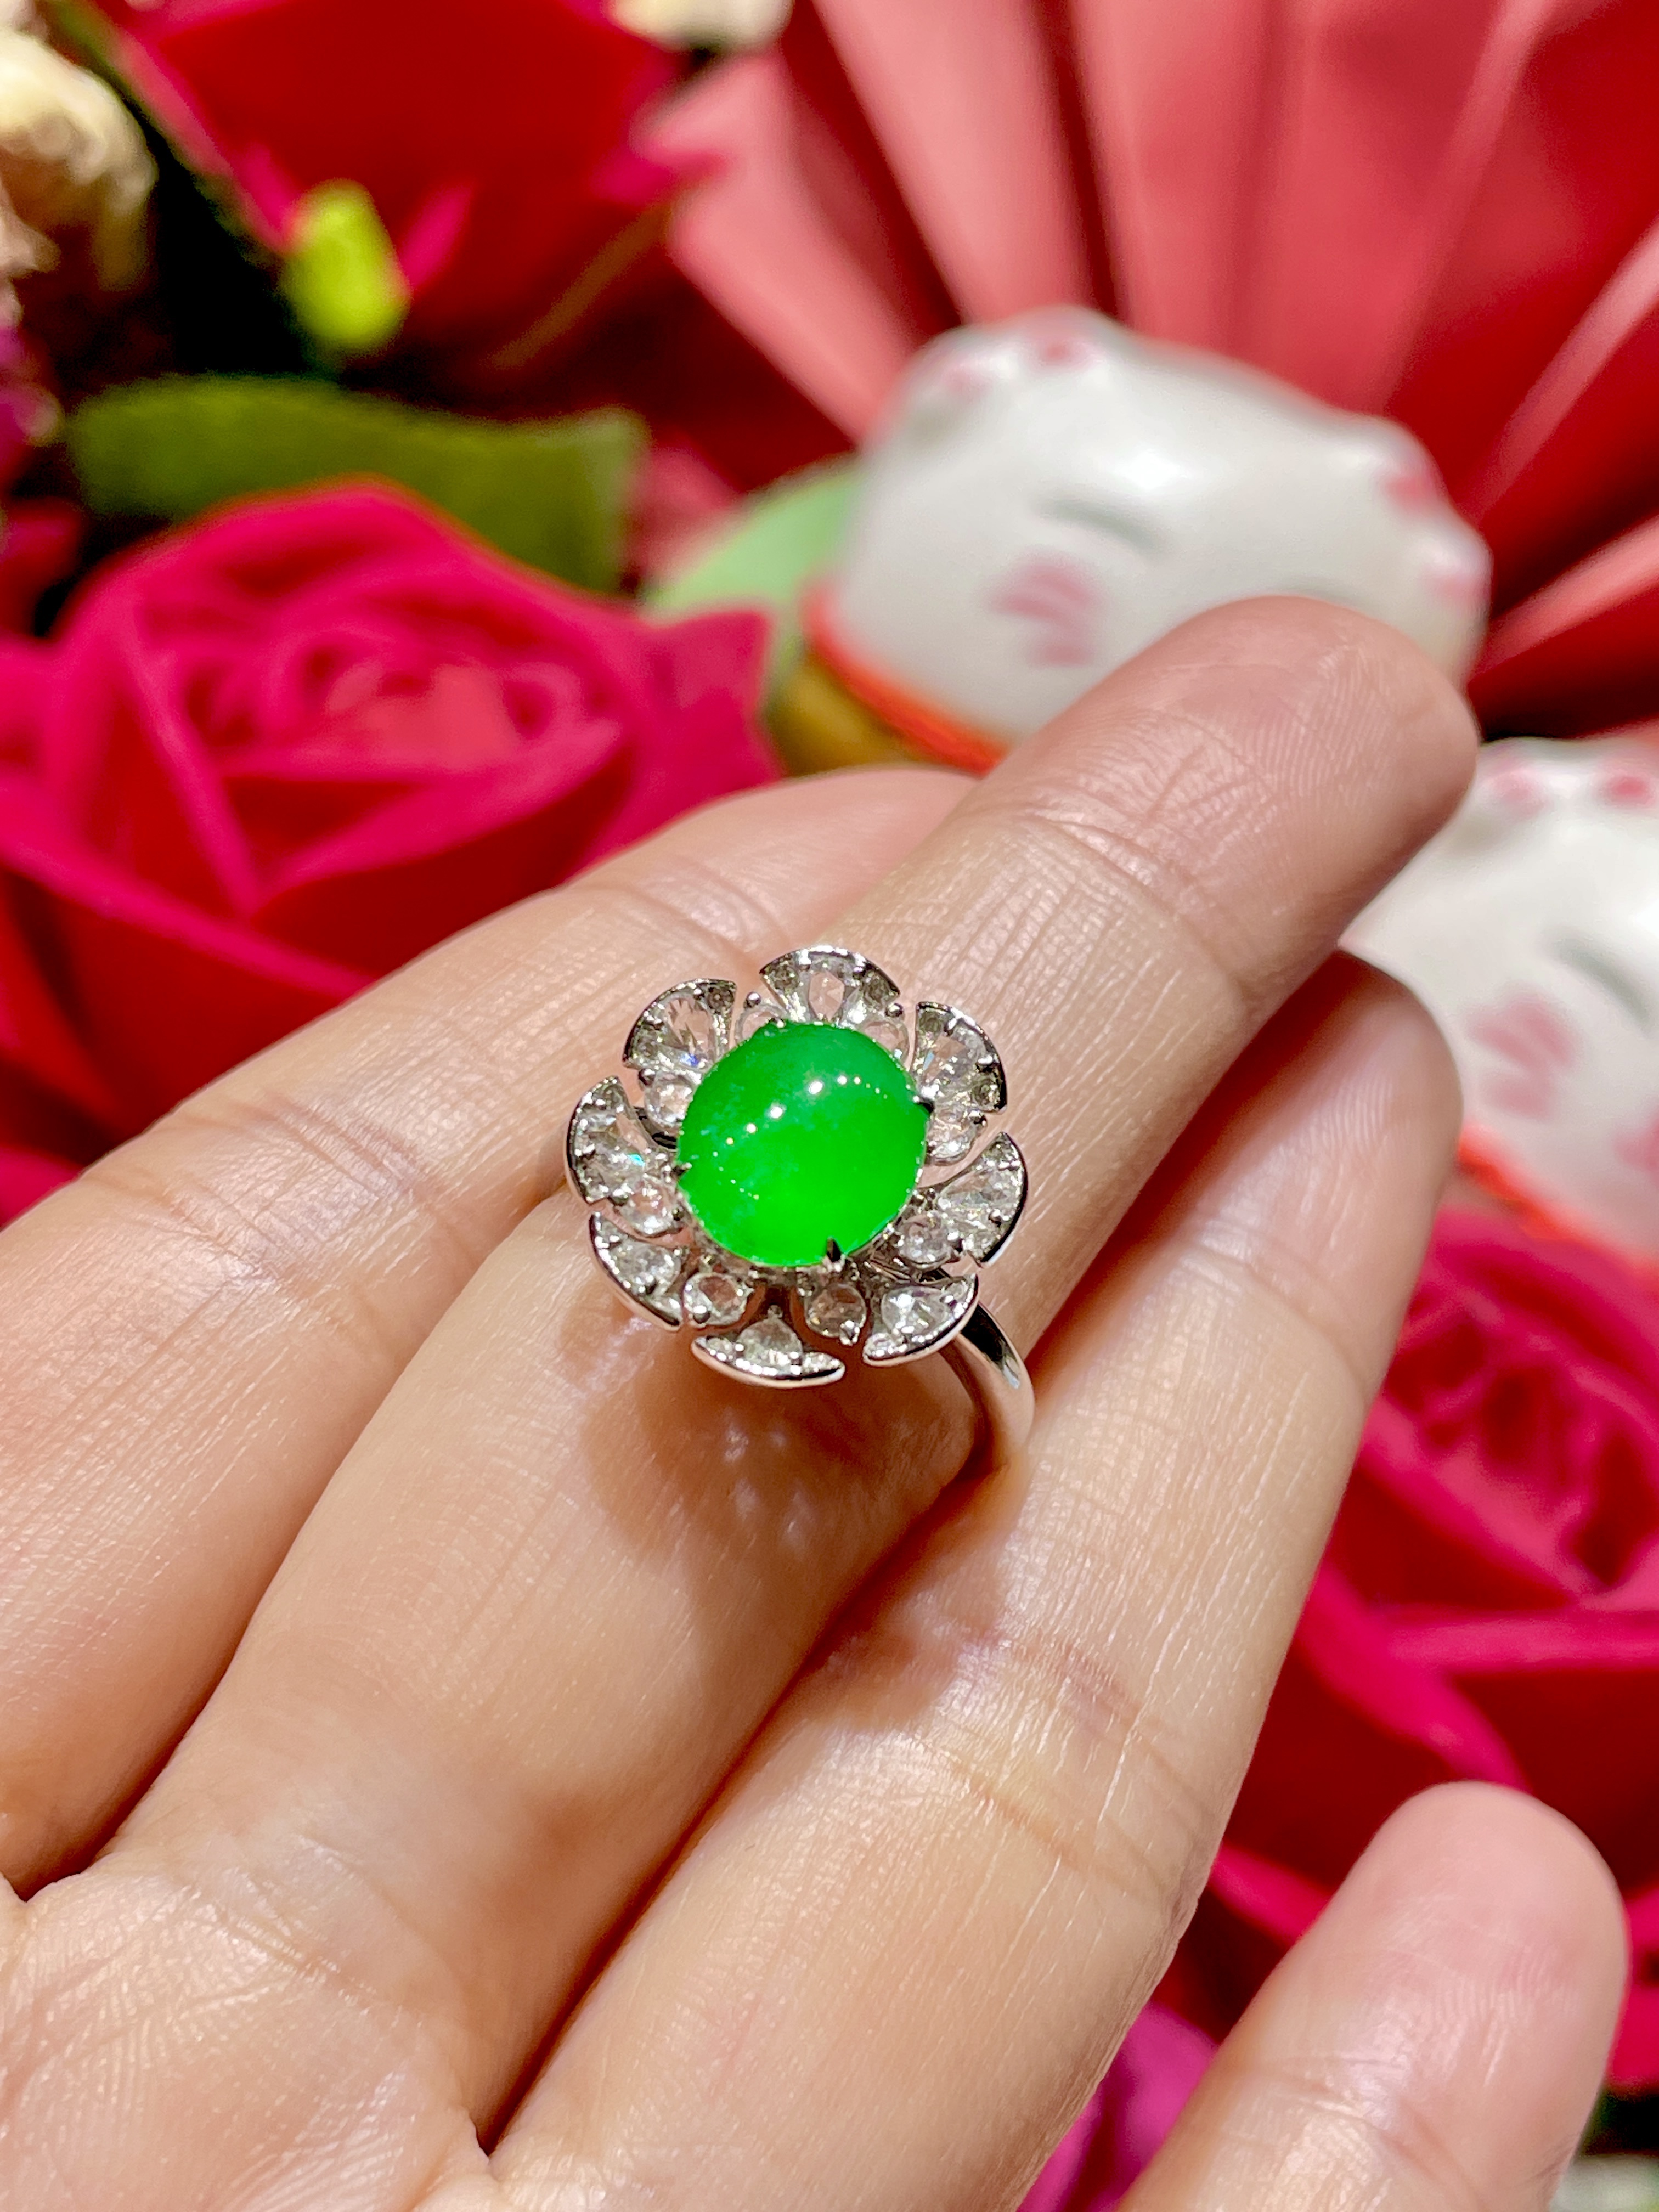 缅甸翡翠A货正品满色阳绿蛋面戒指镶嵌18 K金搭配钻石时尚百搭